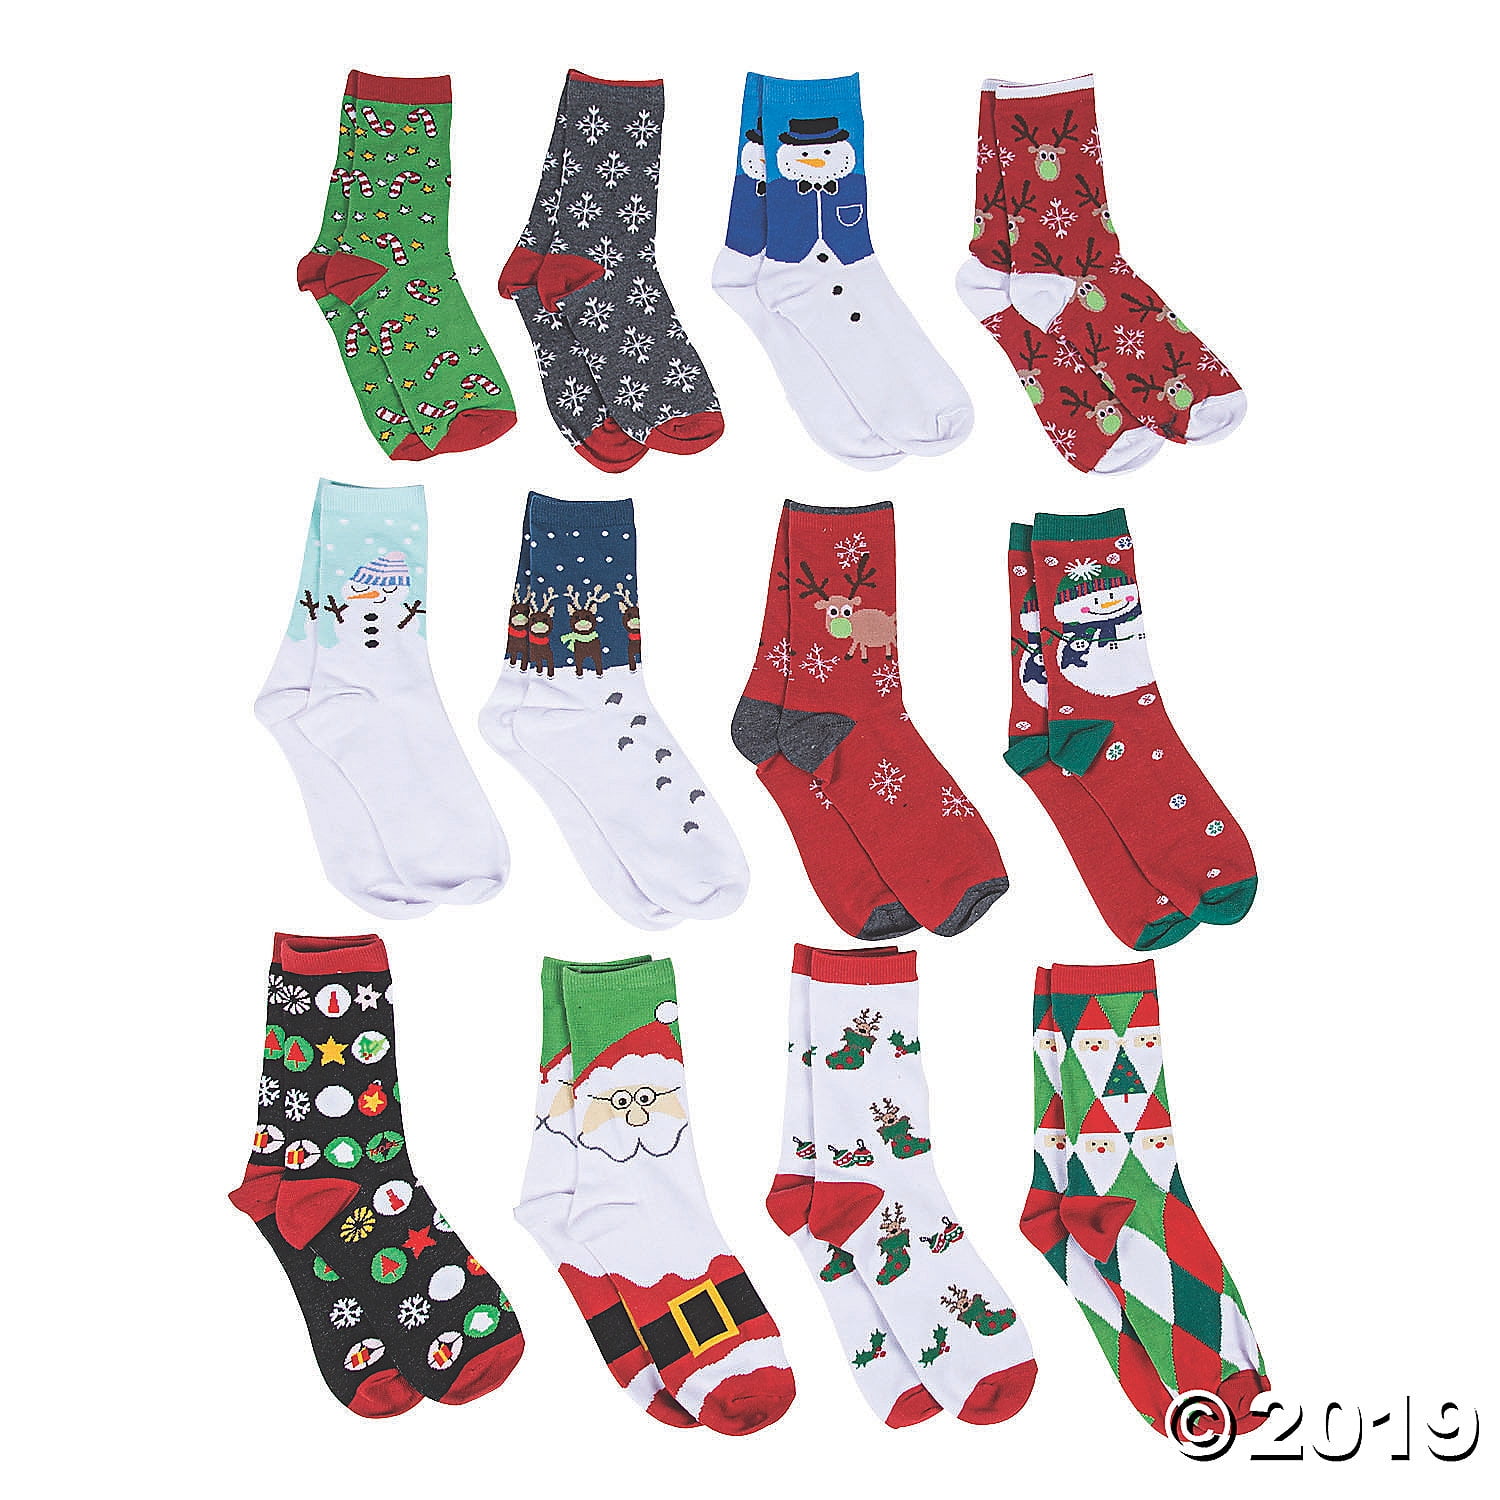 Kid's 12 Days of Christmas Socks Gift Set - Walmart.com